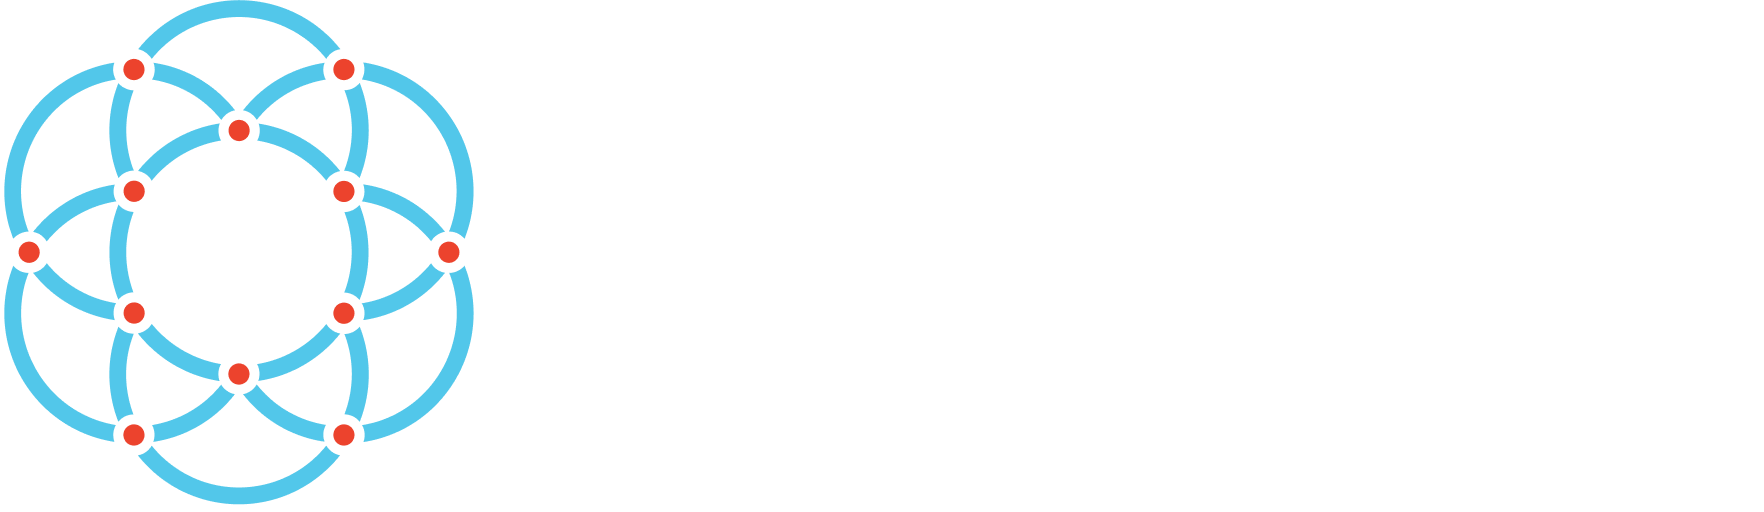 Ockam logo